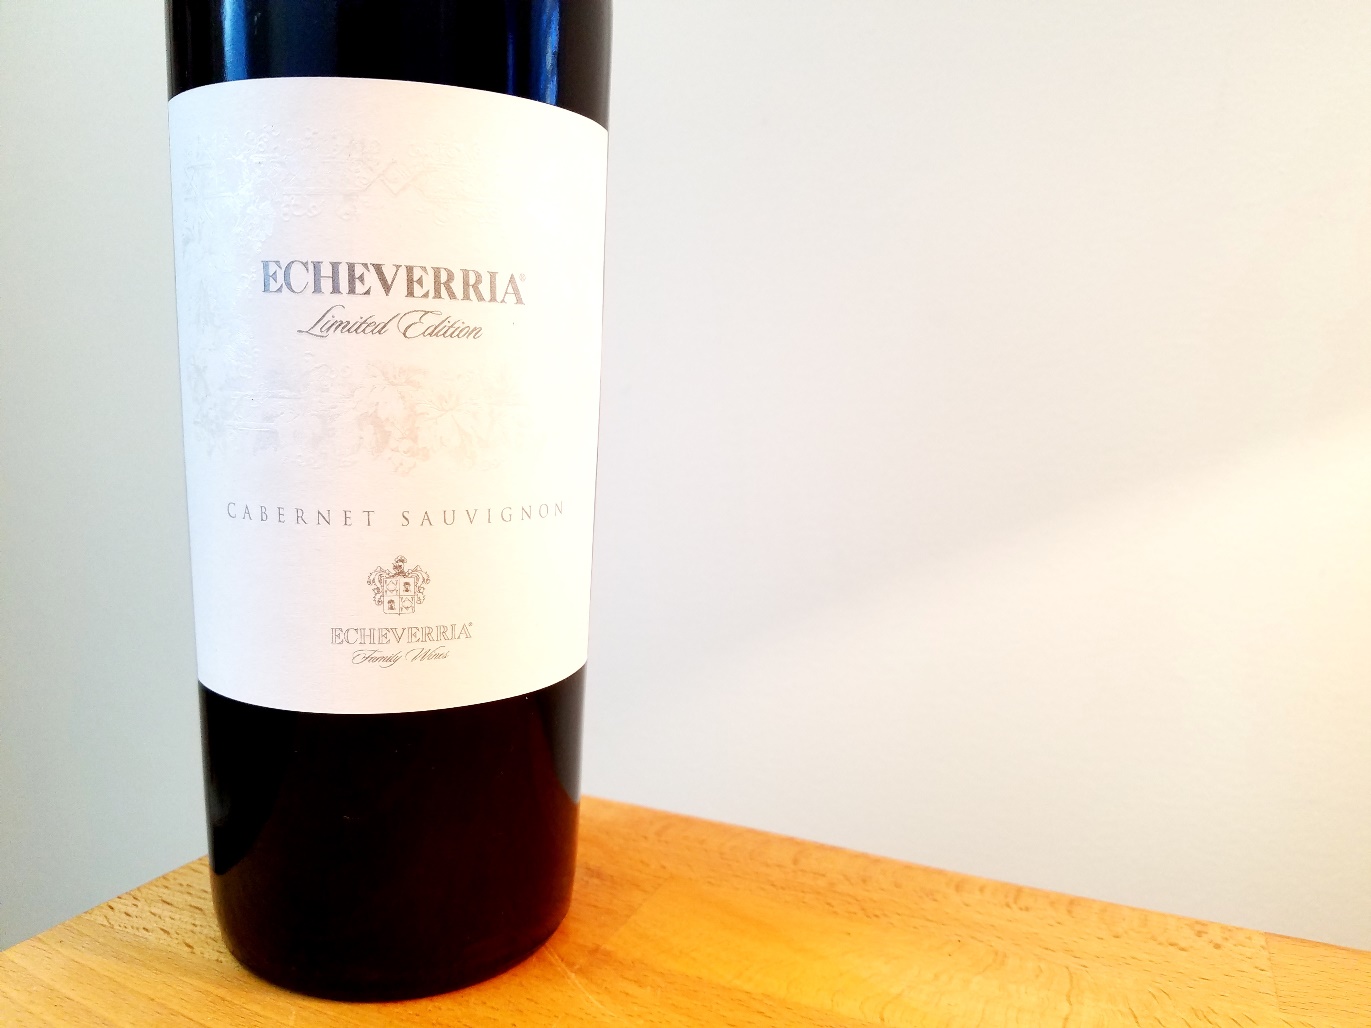 Echeverria, Limited Edition Cabernet Sauvignon 2016, Maipo Valley, Chile, Wine Casual